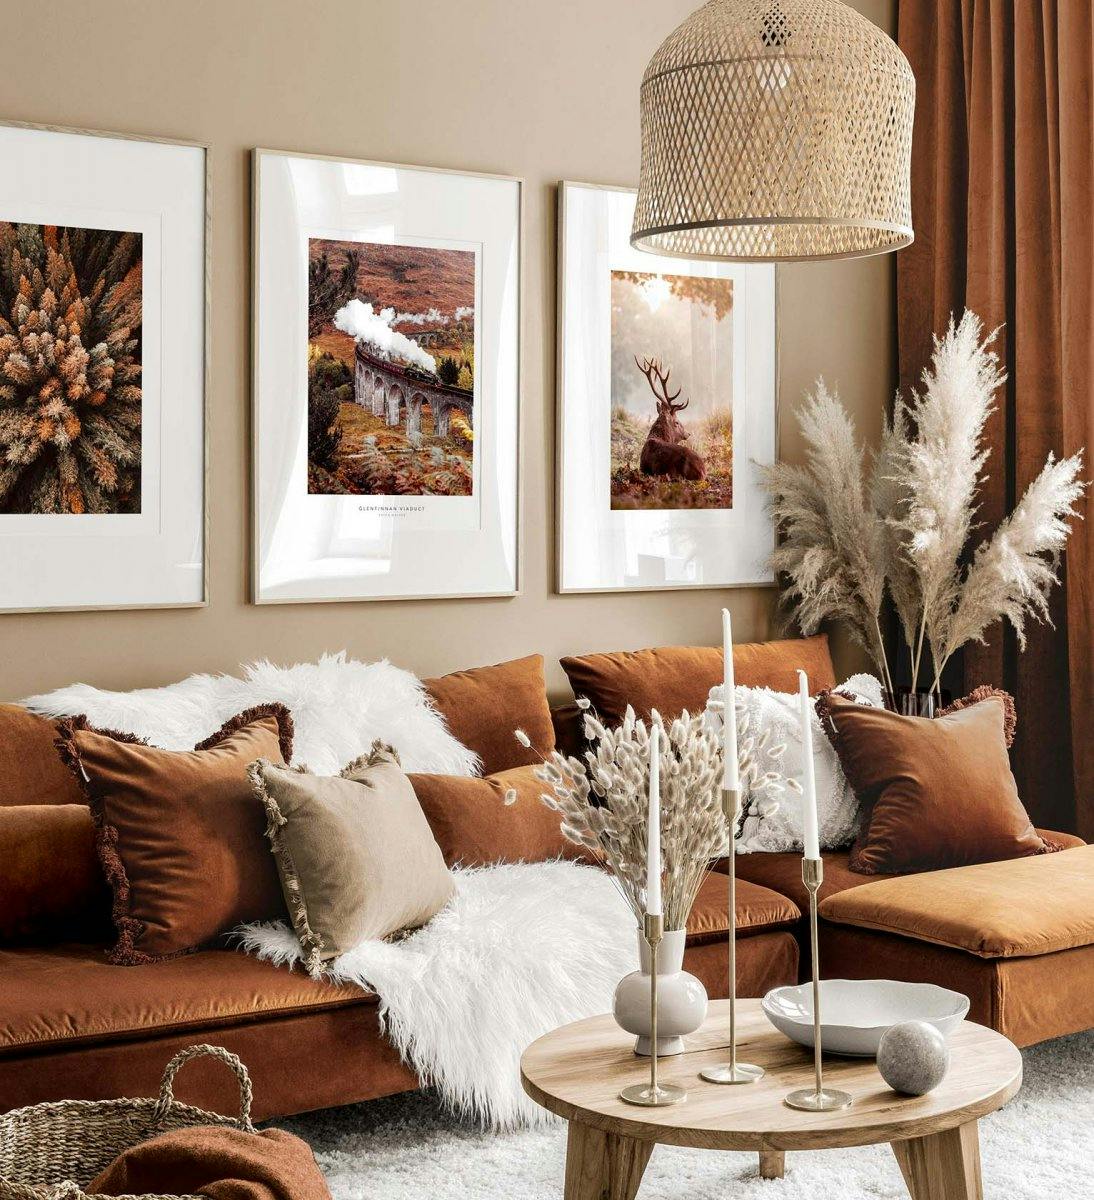 Oranje en bruine galerijwand met inspiratie uit de herfst met eiken kaders voor woonkamer